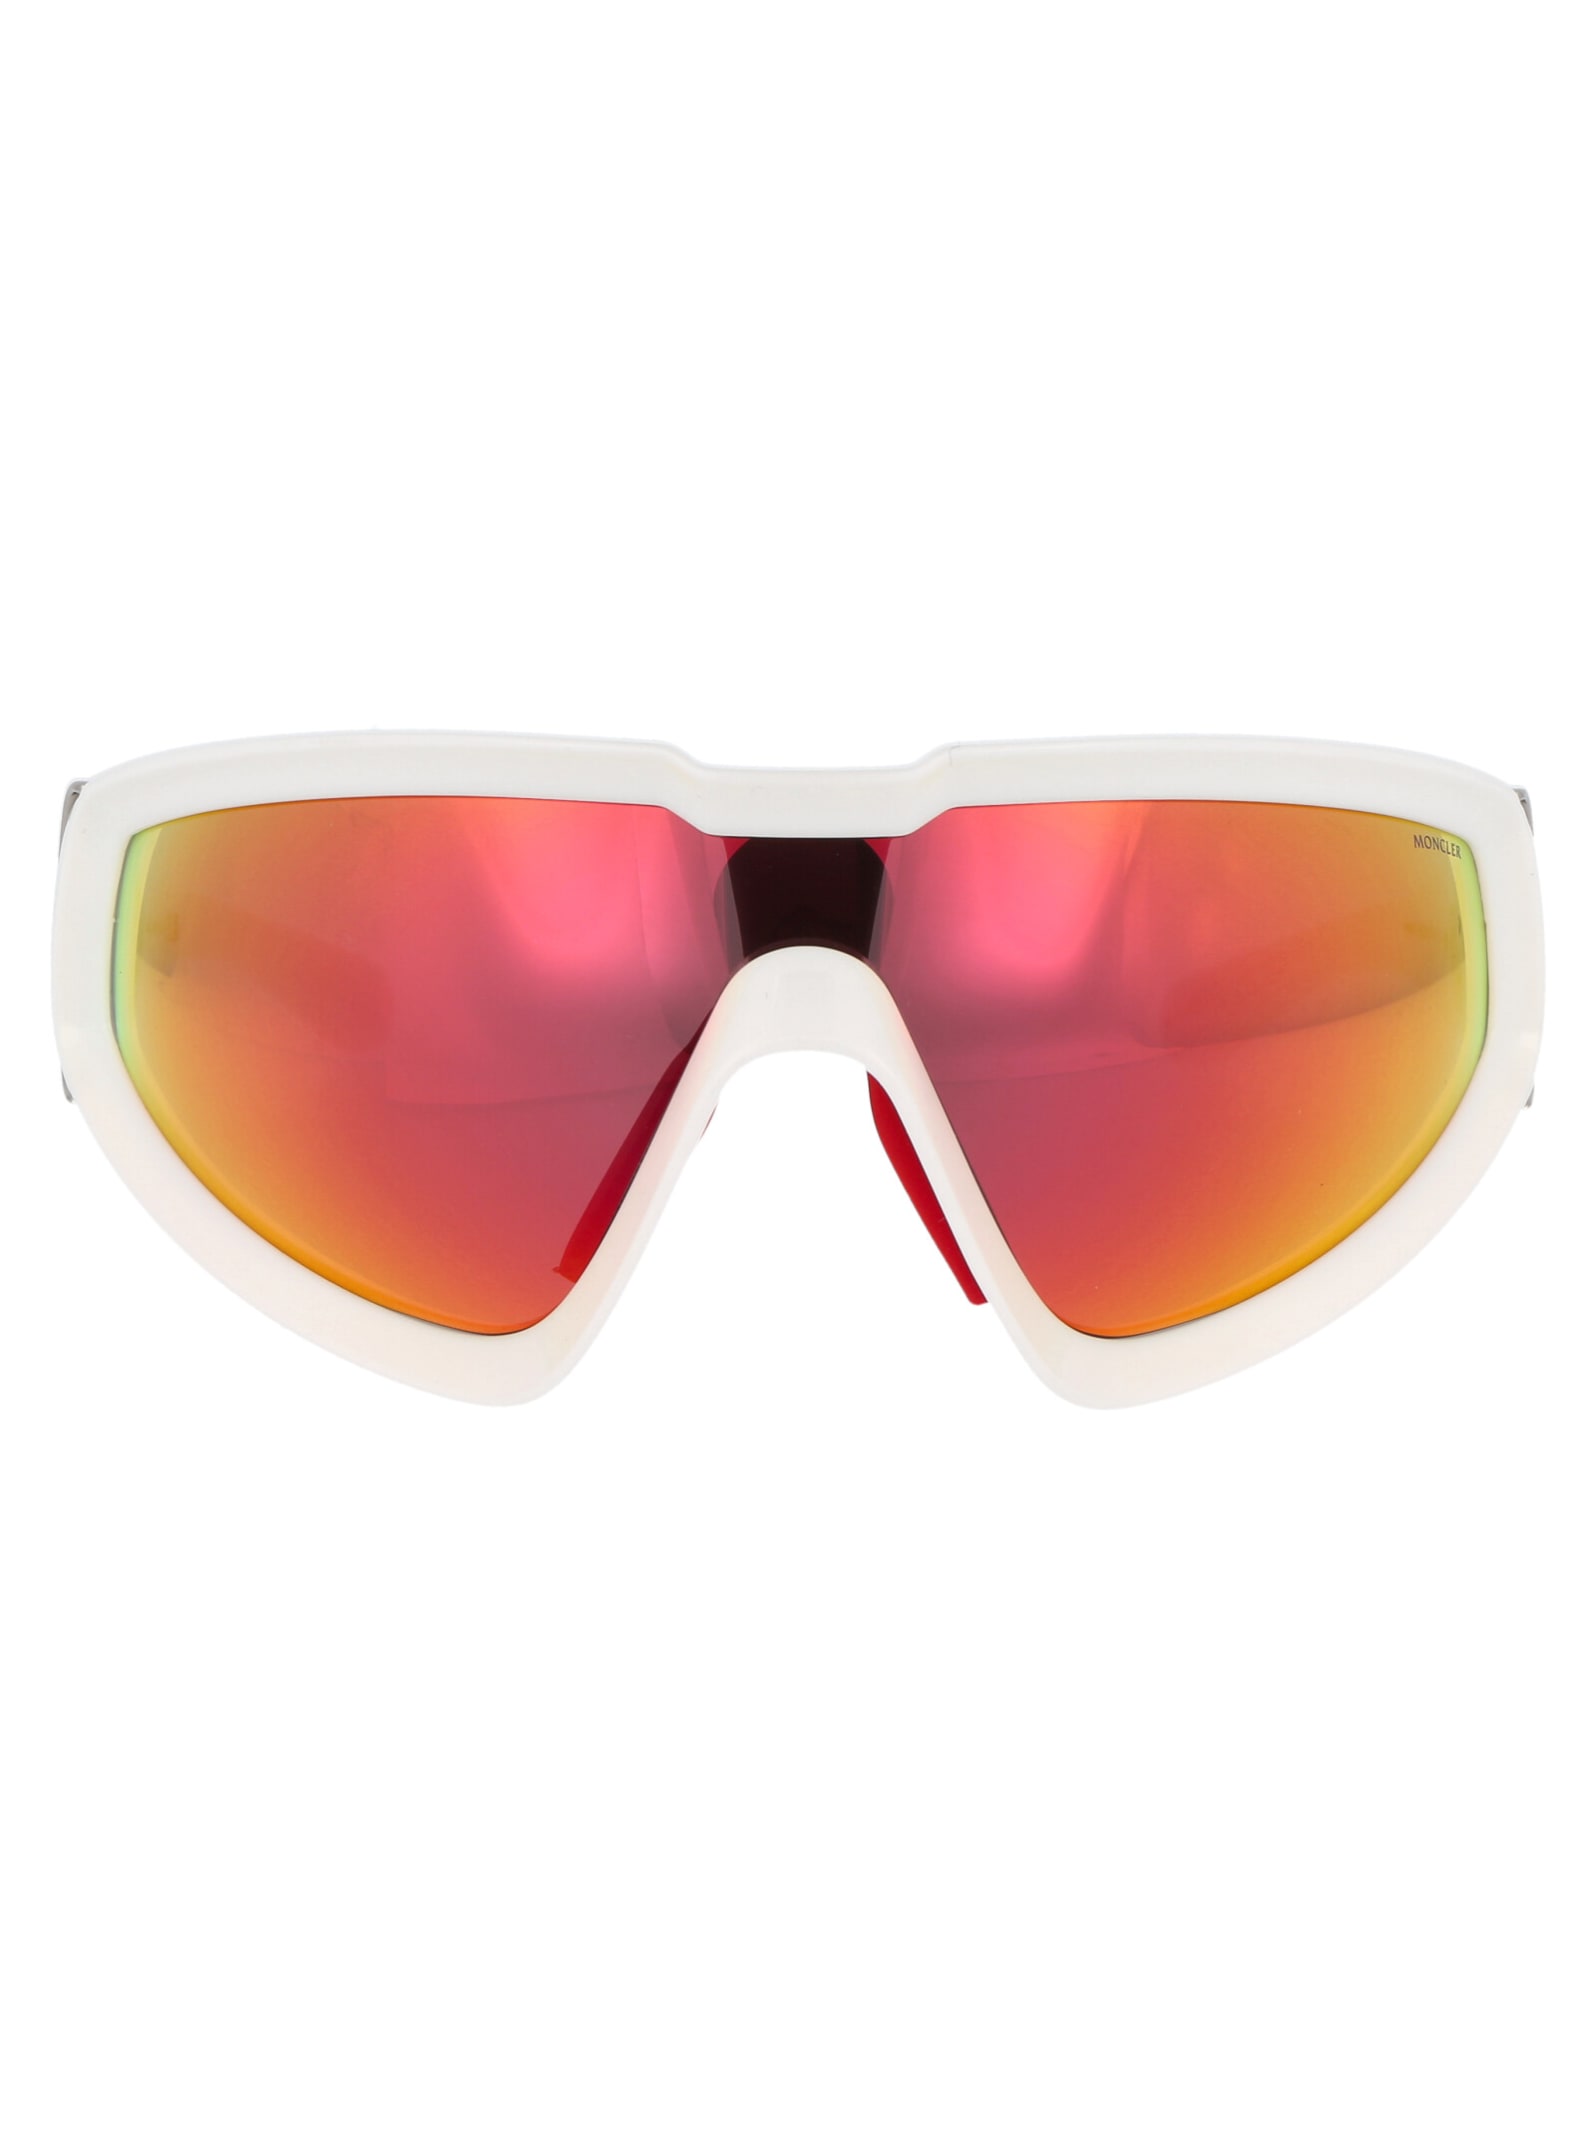 Moncler Eyewear Ml0249 Sunglasses